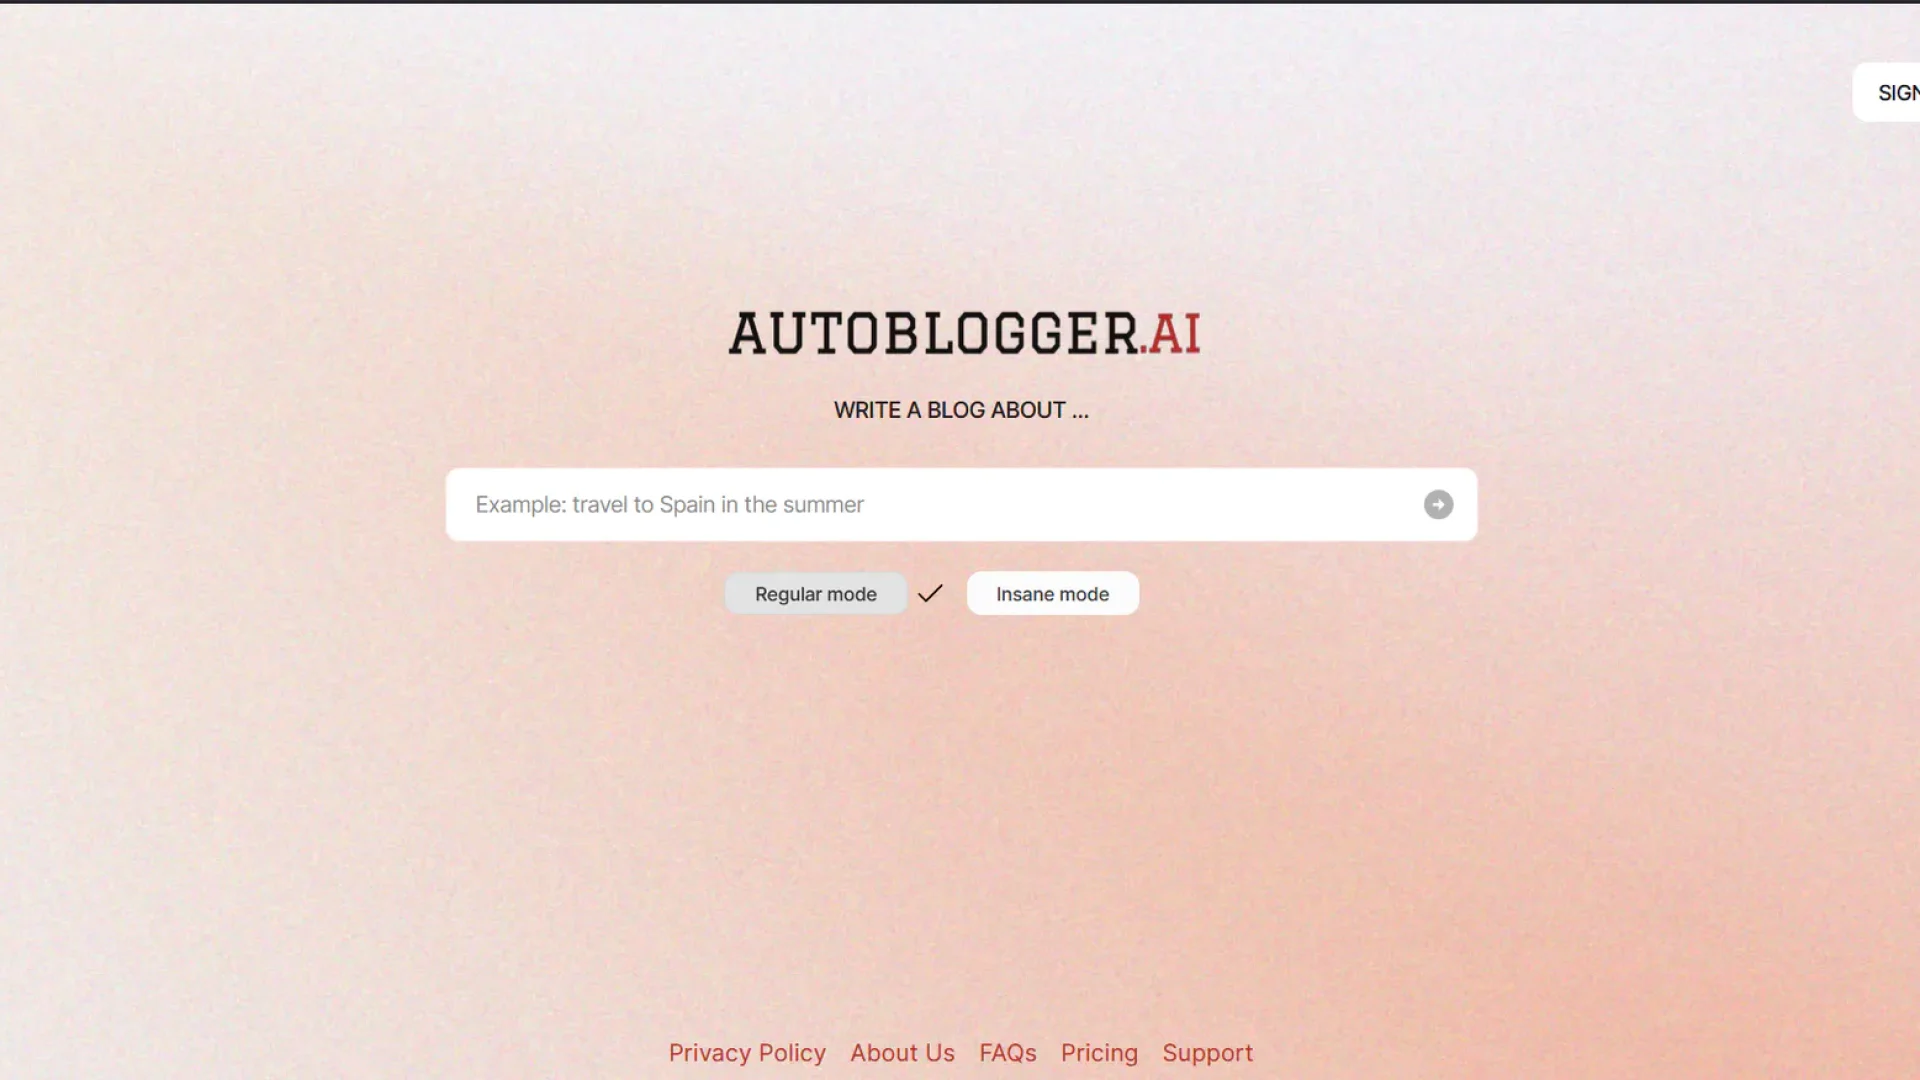 Autoblogger.ai